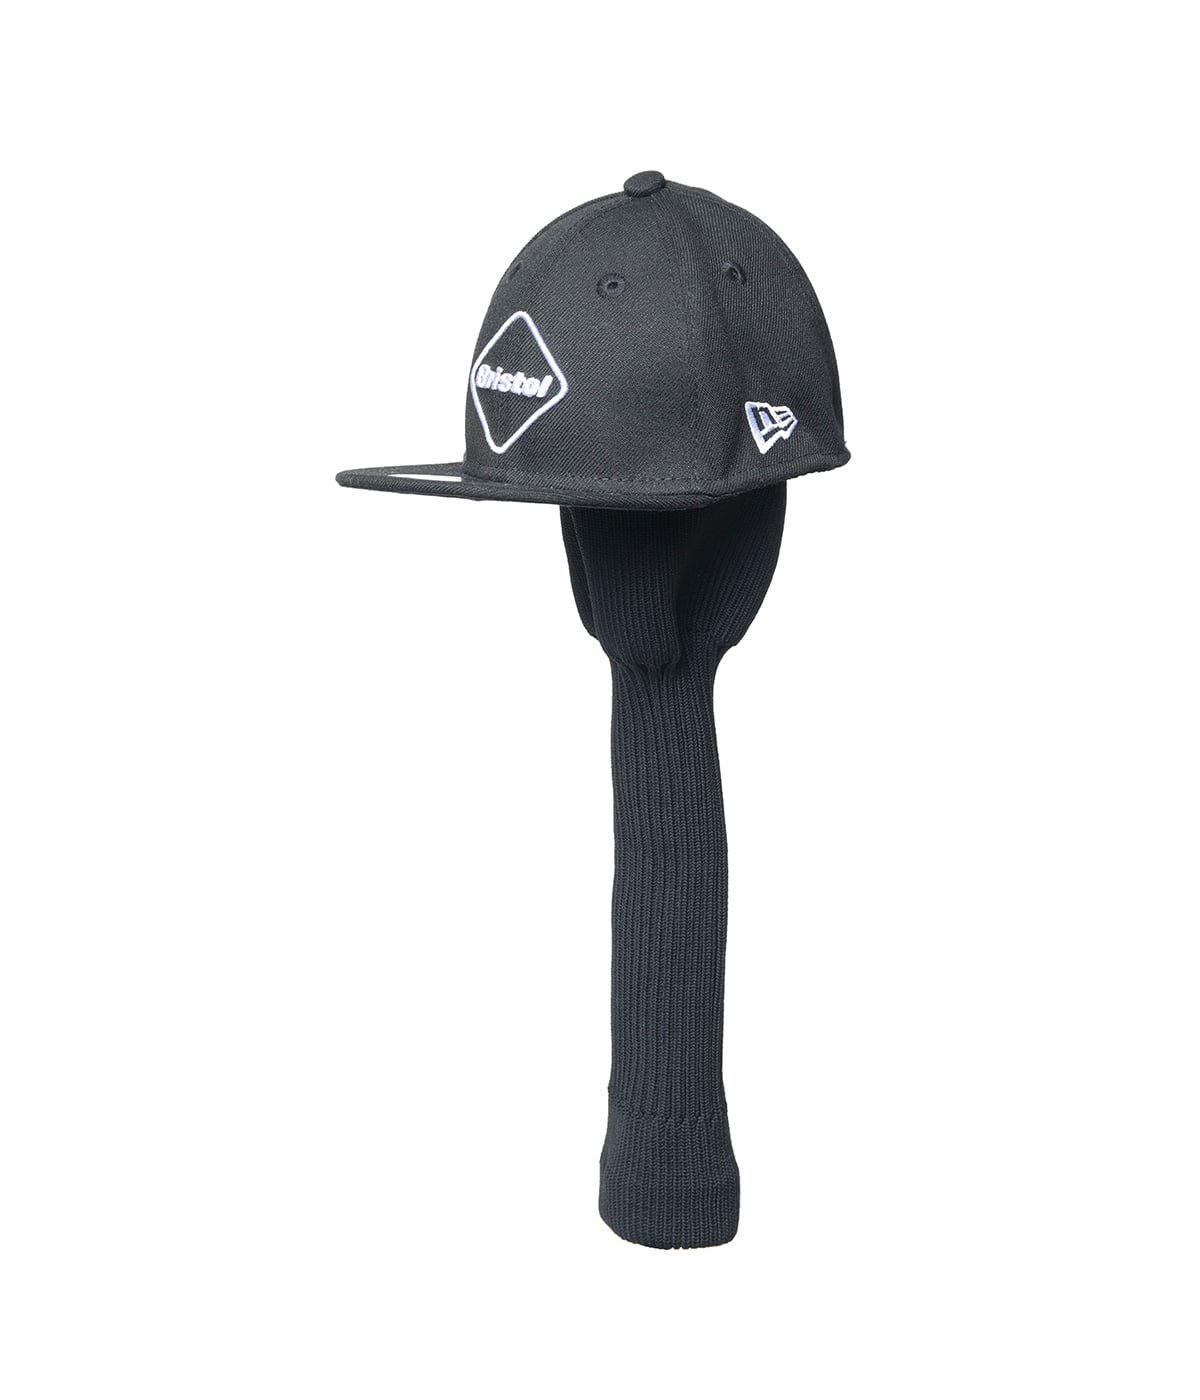 帽子新品 FR2 FCRB 20AW コラボ EMBLEM CAP ロゴ キャップ